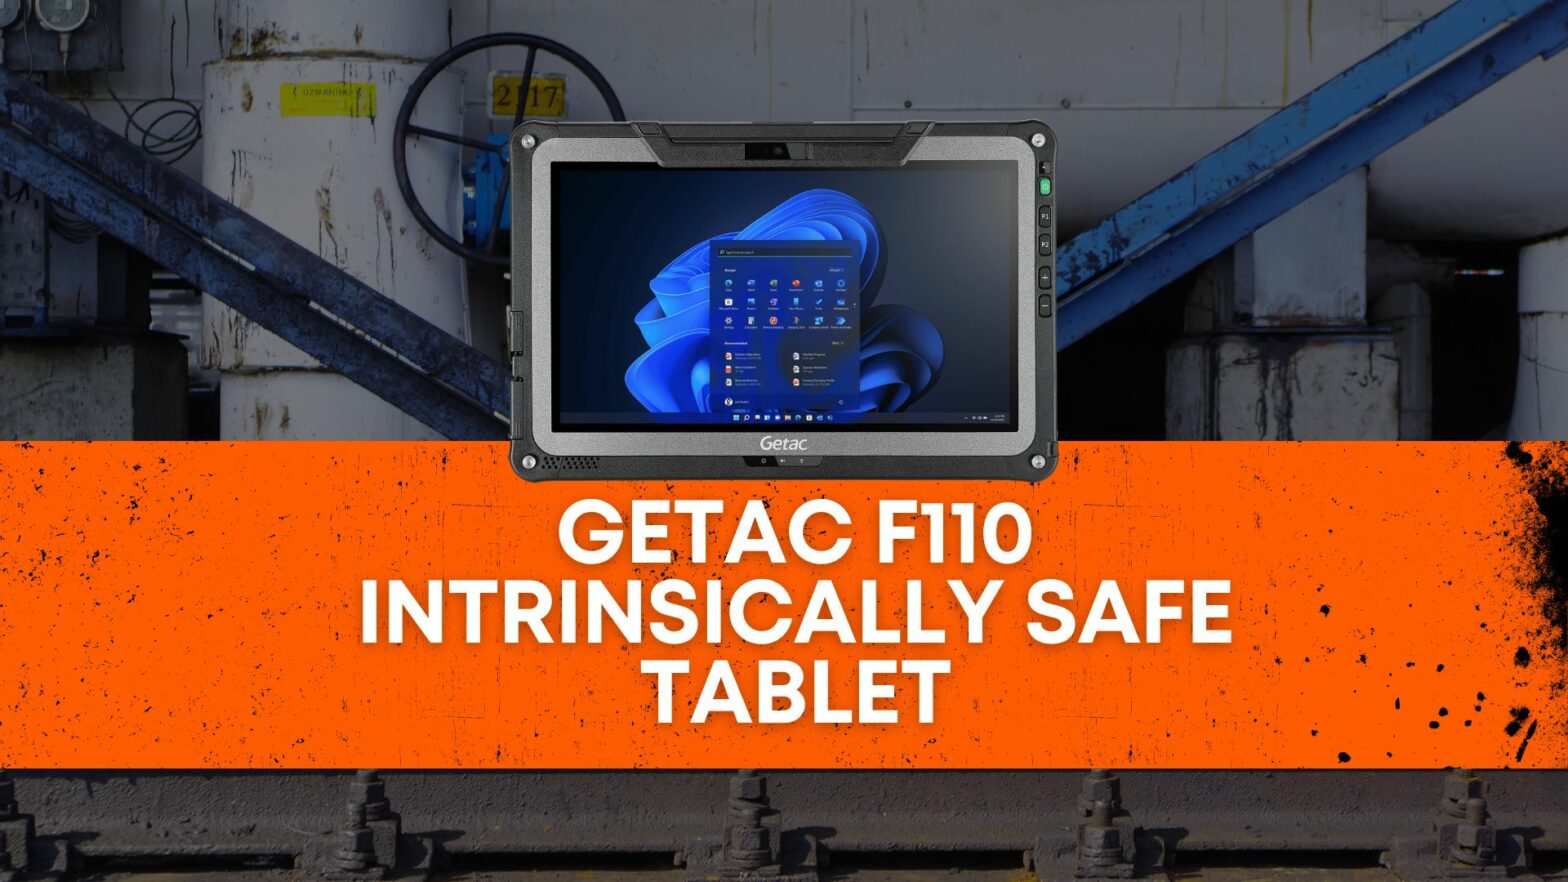 Getac F110 Intrinsically Safe Tablet